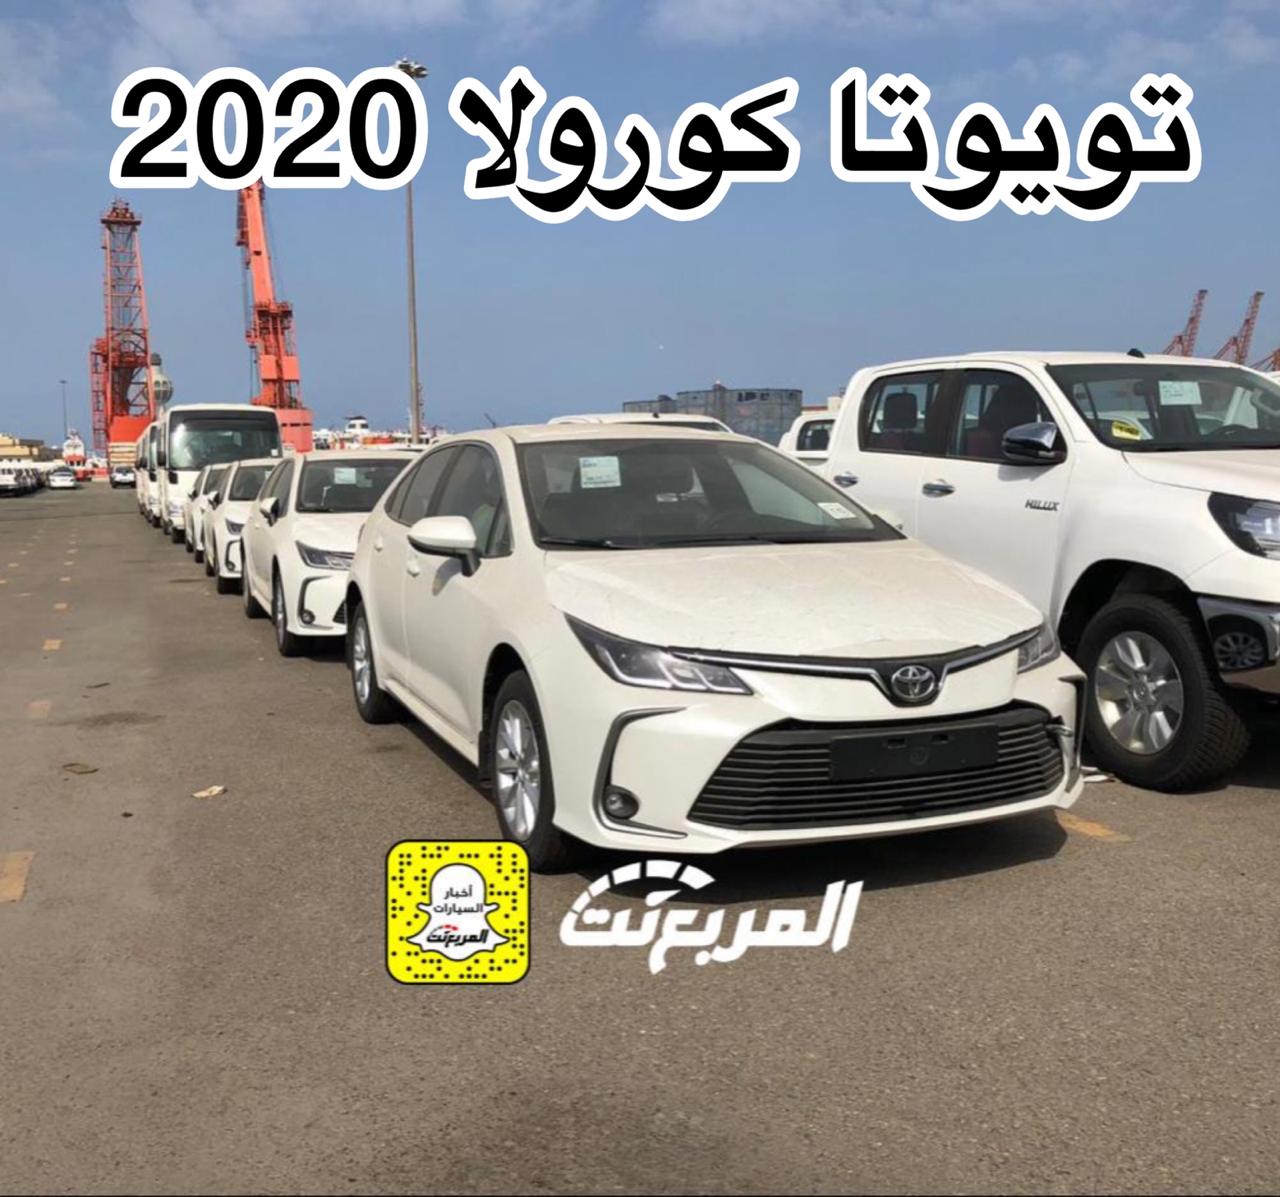 “بالصور” وصول تويوتا كورولا 2020 الجديدة الى السعودية + معلومات Toyota Corolla 3